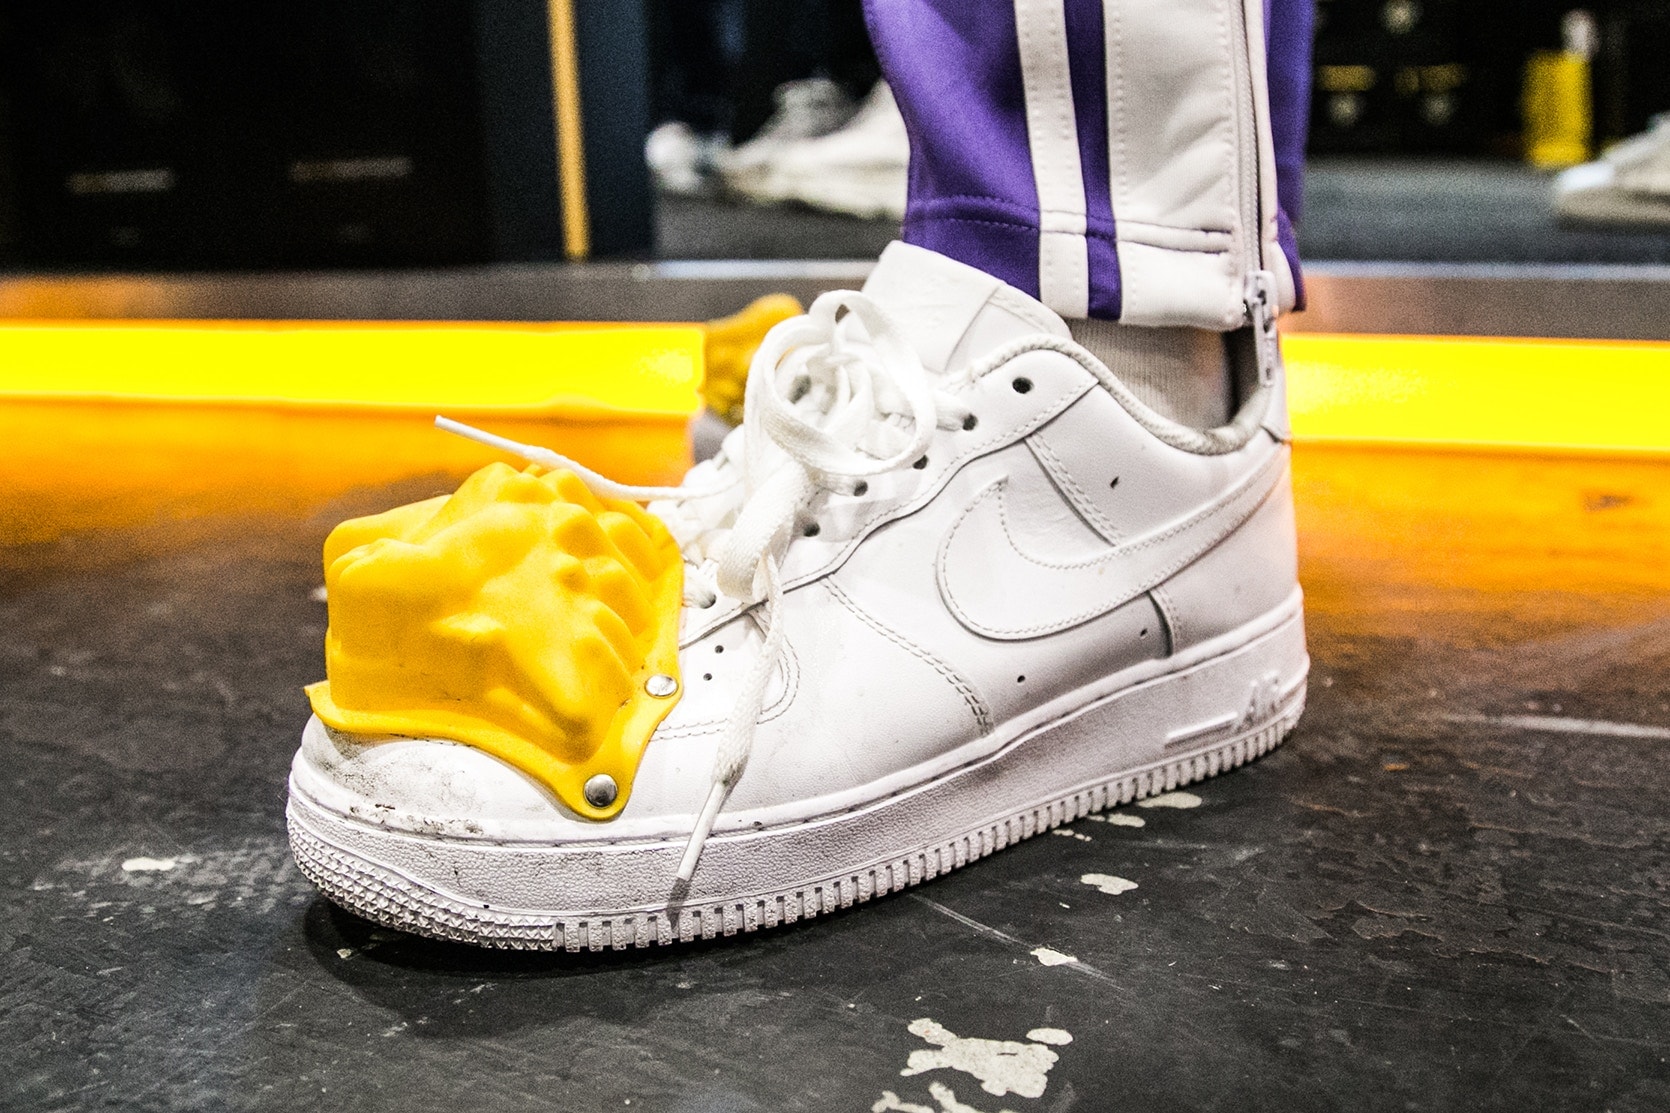 2017 런던 스니커 콘 Sneaker Con London pictures 현장 모습 공개 나이키 아디다스 오리지널스 이지 부스트 프로즌 옐로 퍼렐 샤넬 컨버스 Nike AF100 Air Force Acronym Yeezy Boost Frozen Yellow Pharrell Chanel NMD 아크로님 휴